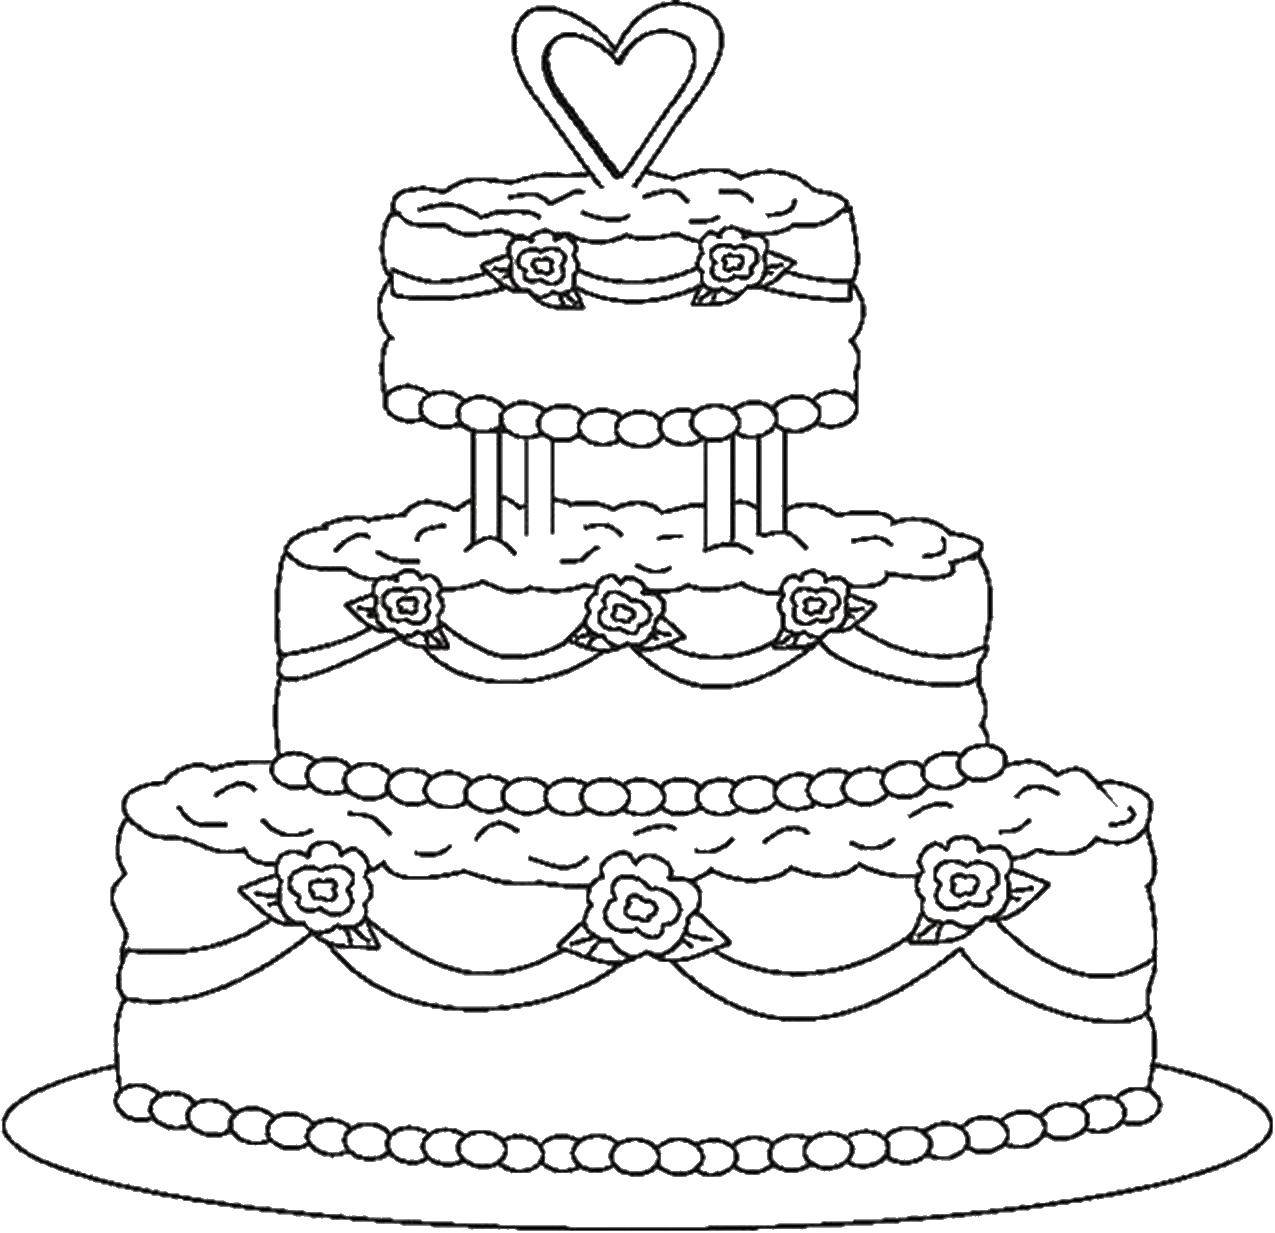 Название: Раскраска Торт с сердечком на свадьбу. Категория: Свадьба. Теги: свадьба, платье, букет.